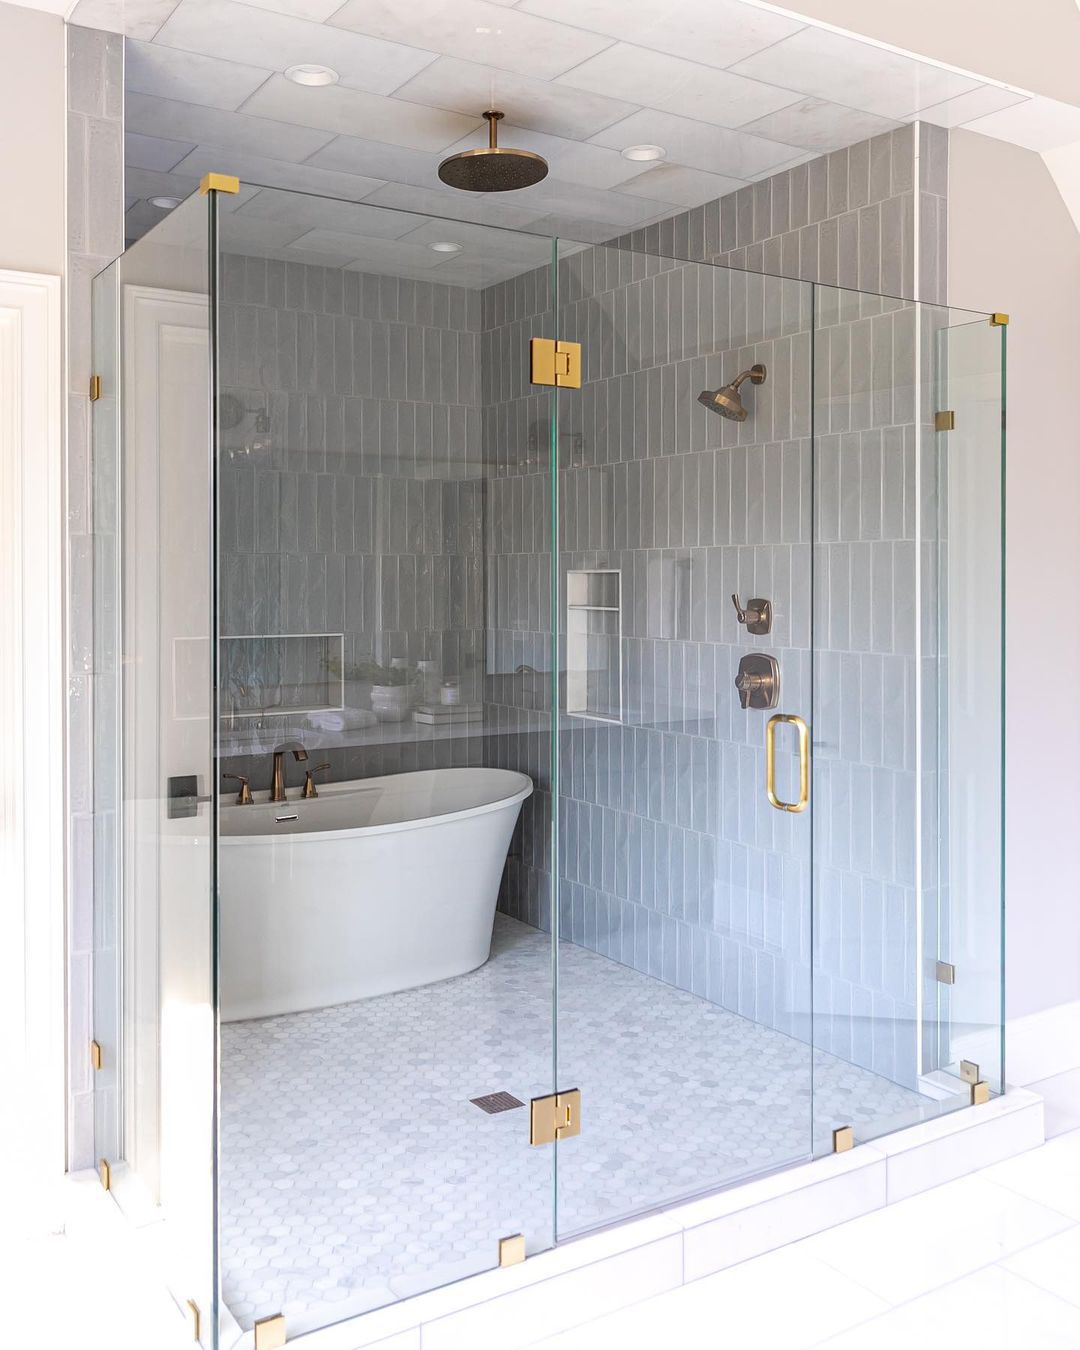 tub inside tiled shower